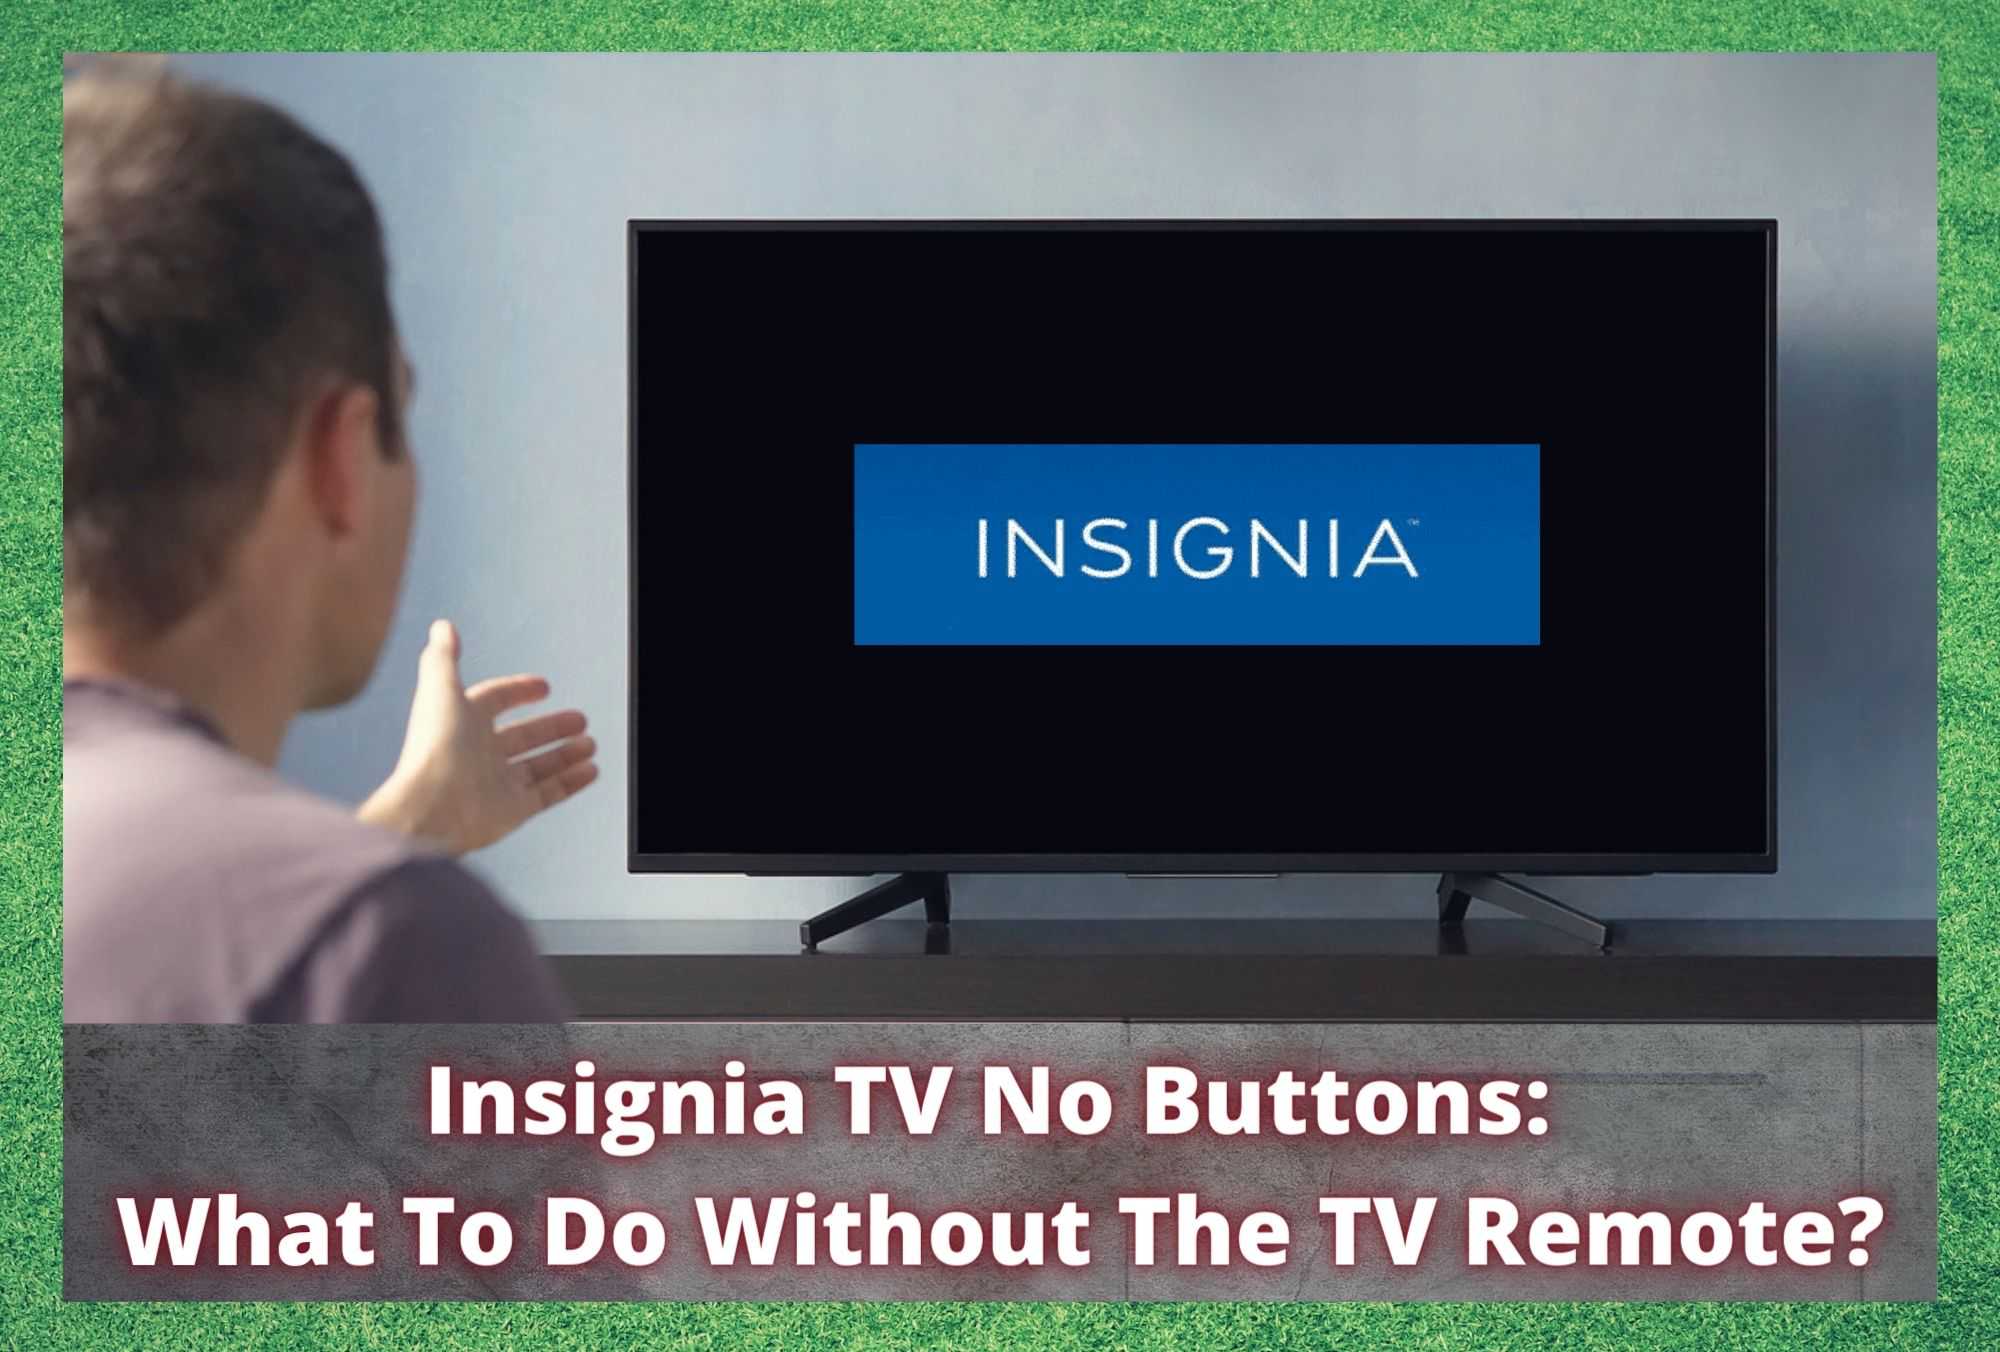 بدون دکمه تلویزیون Insignia: بدون کنترل تلویزیون چه باید کرد؟